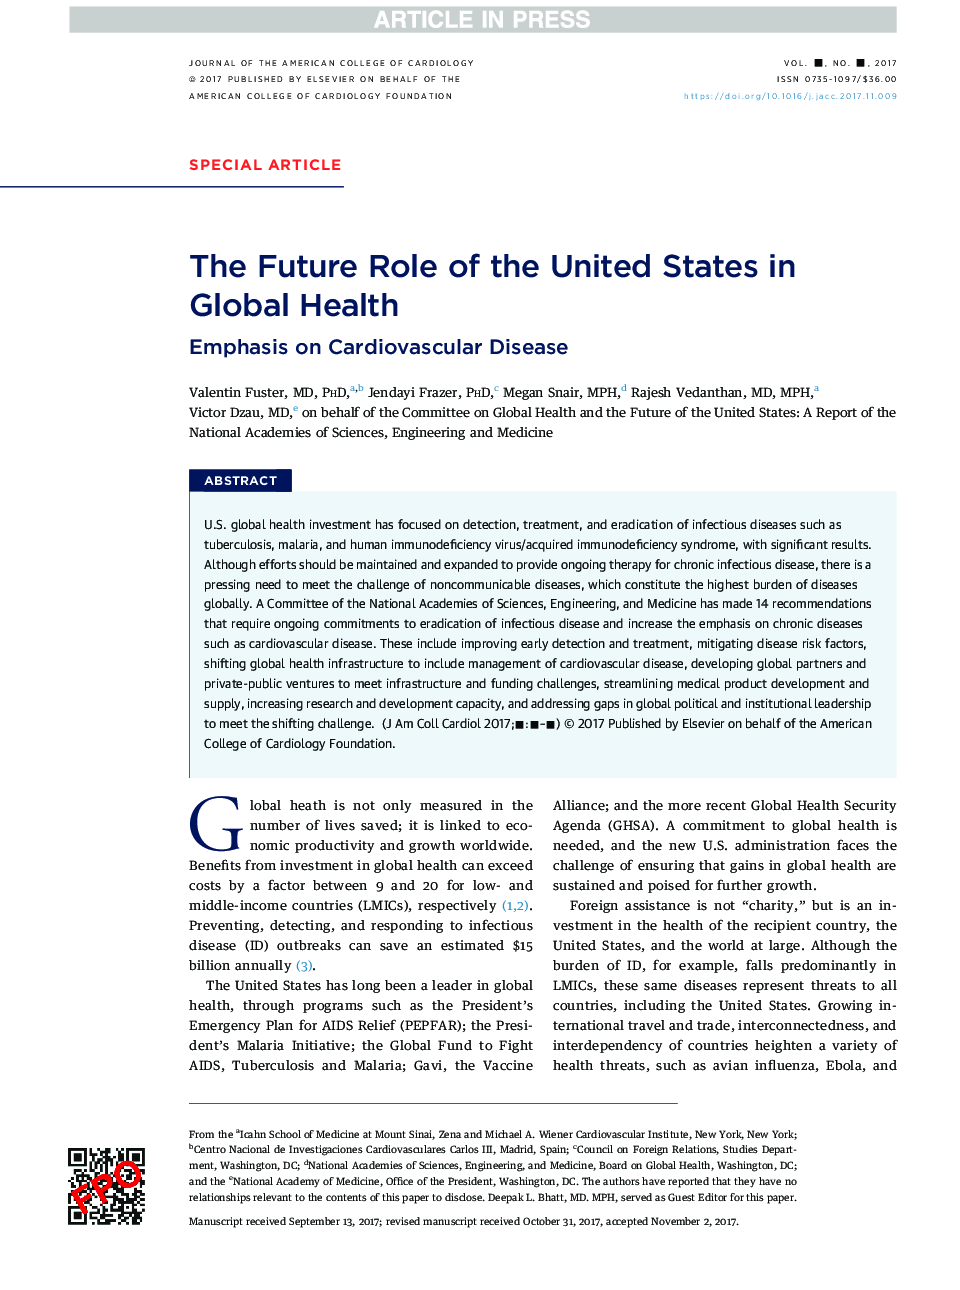 نقش آینده ایالات متحده در سلامت جهانی 